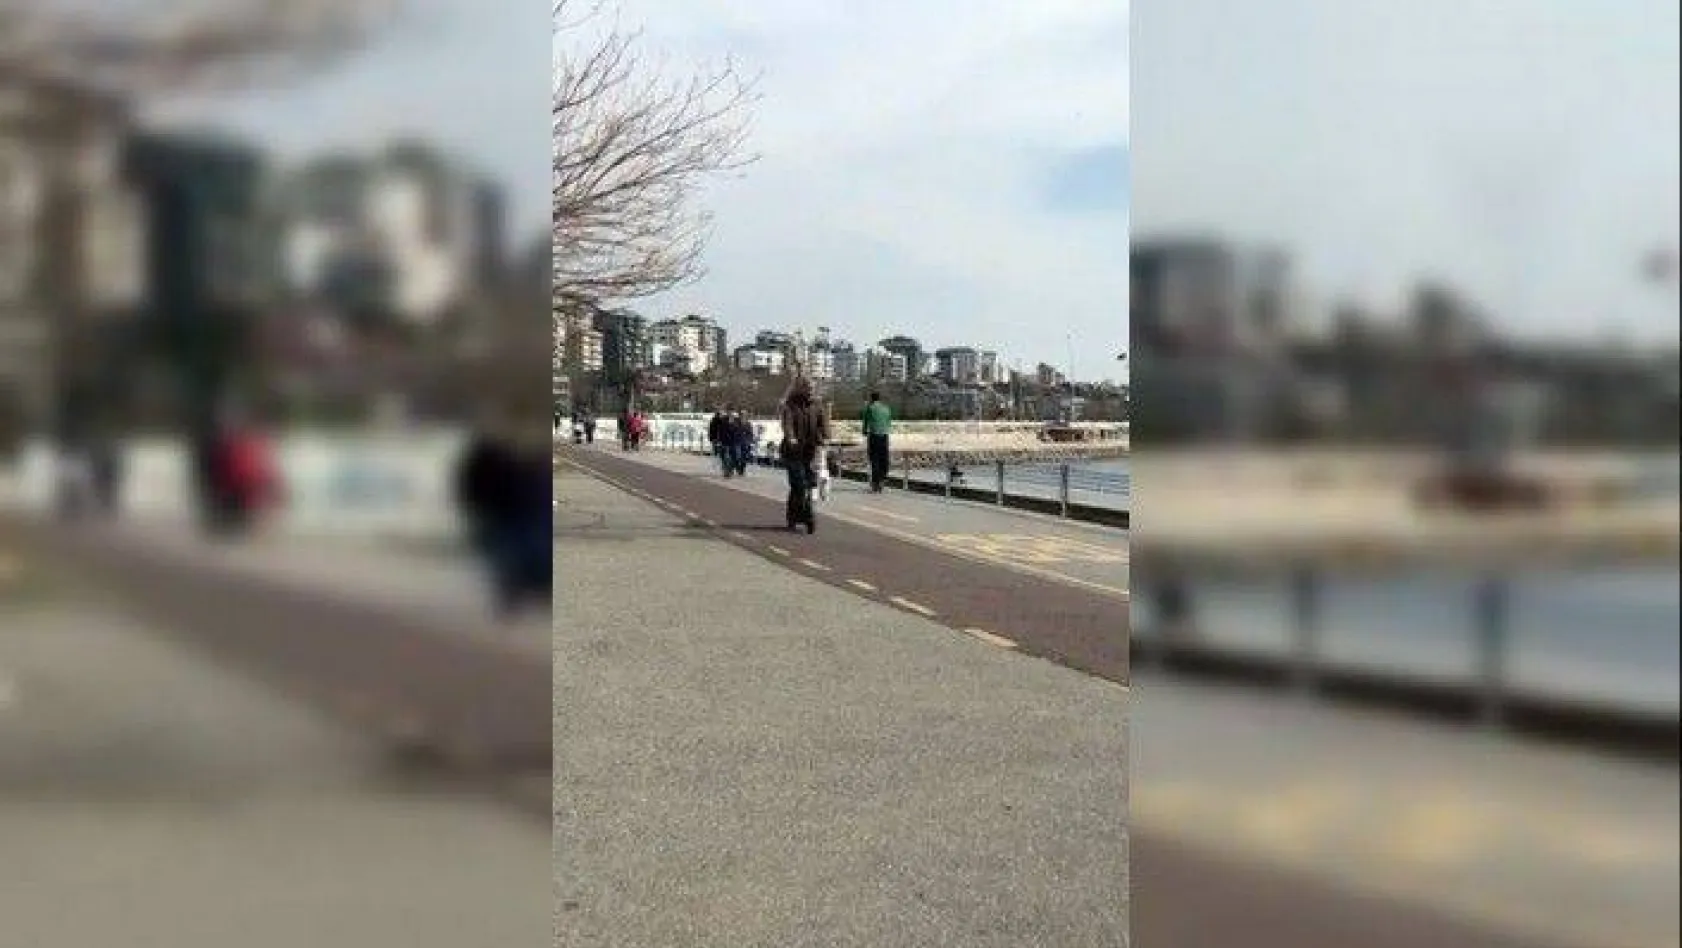 Yaşlı vatandaşın scooterla sahile çıkması pes dedirtti